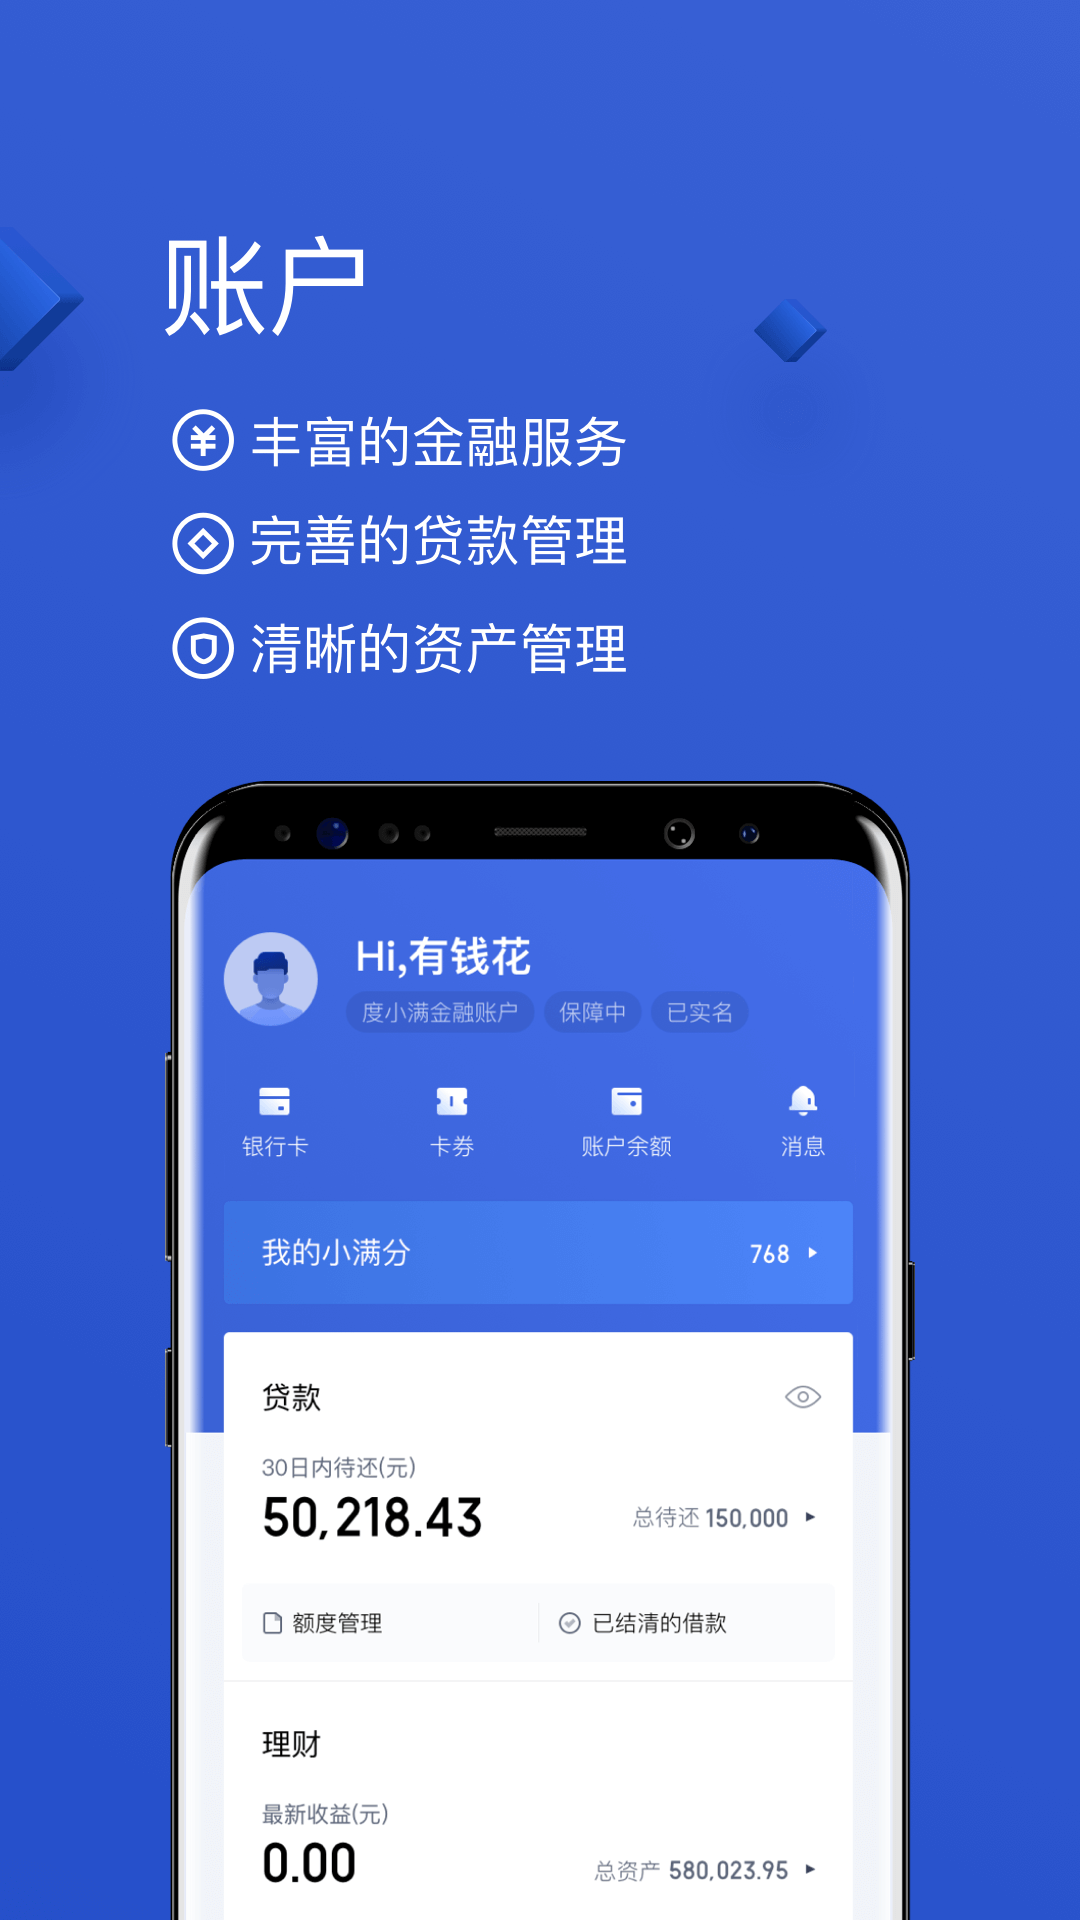 有钱花app官方下载图片